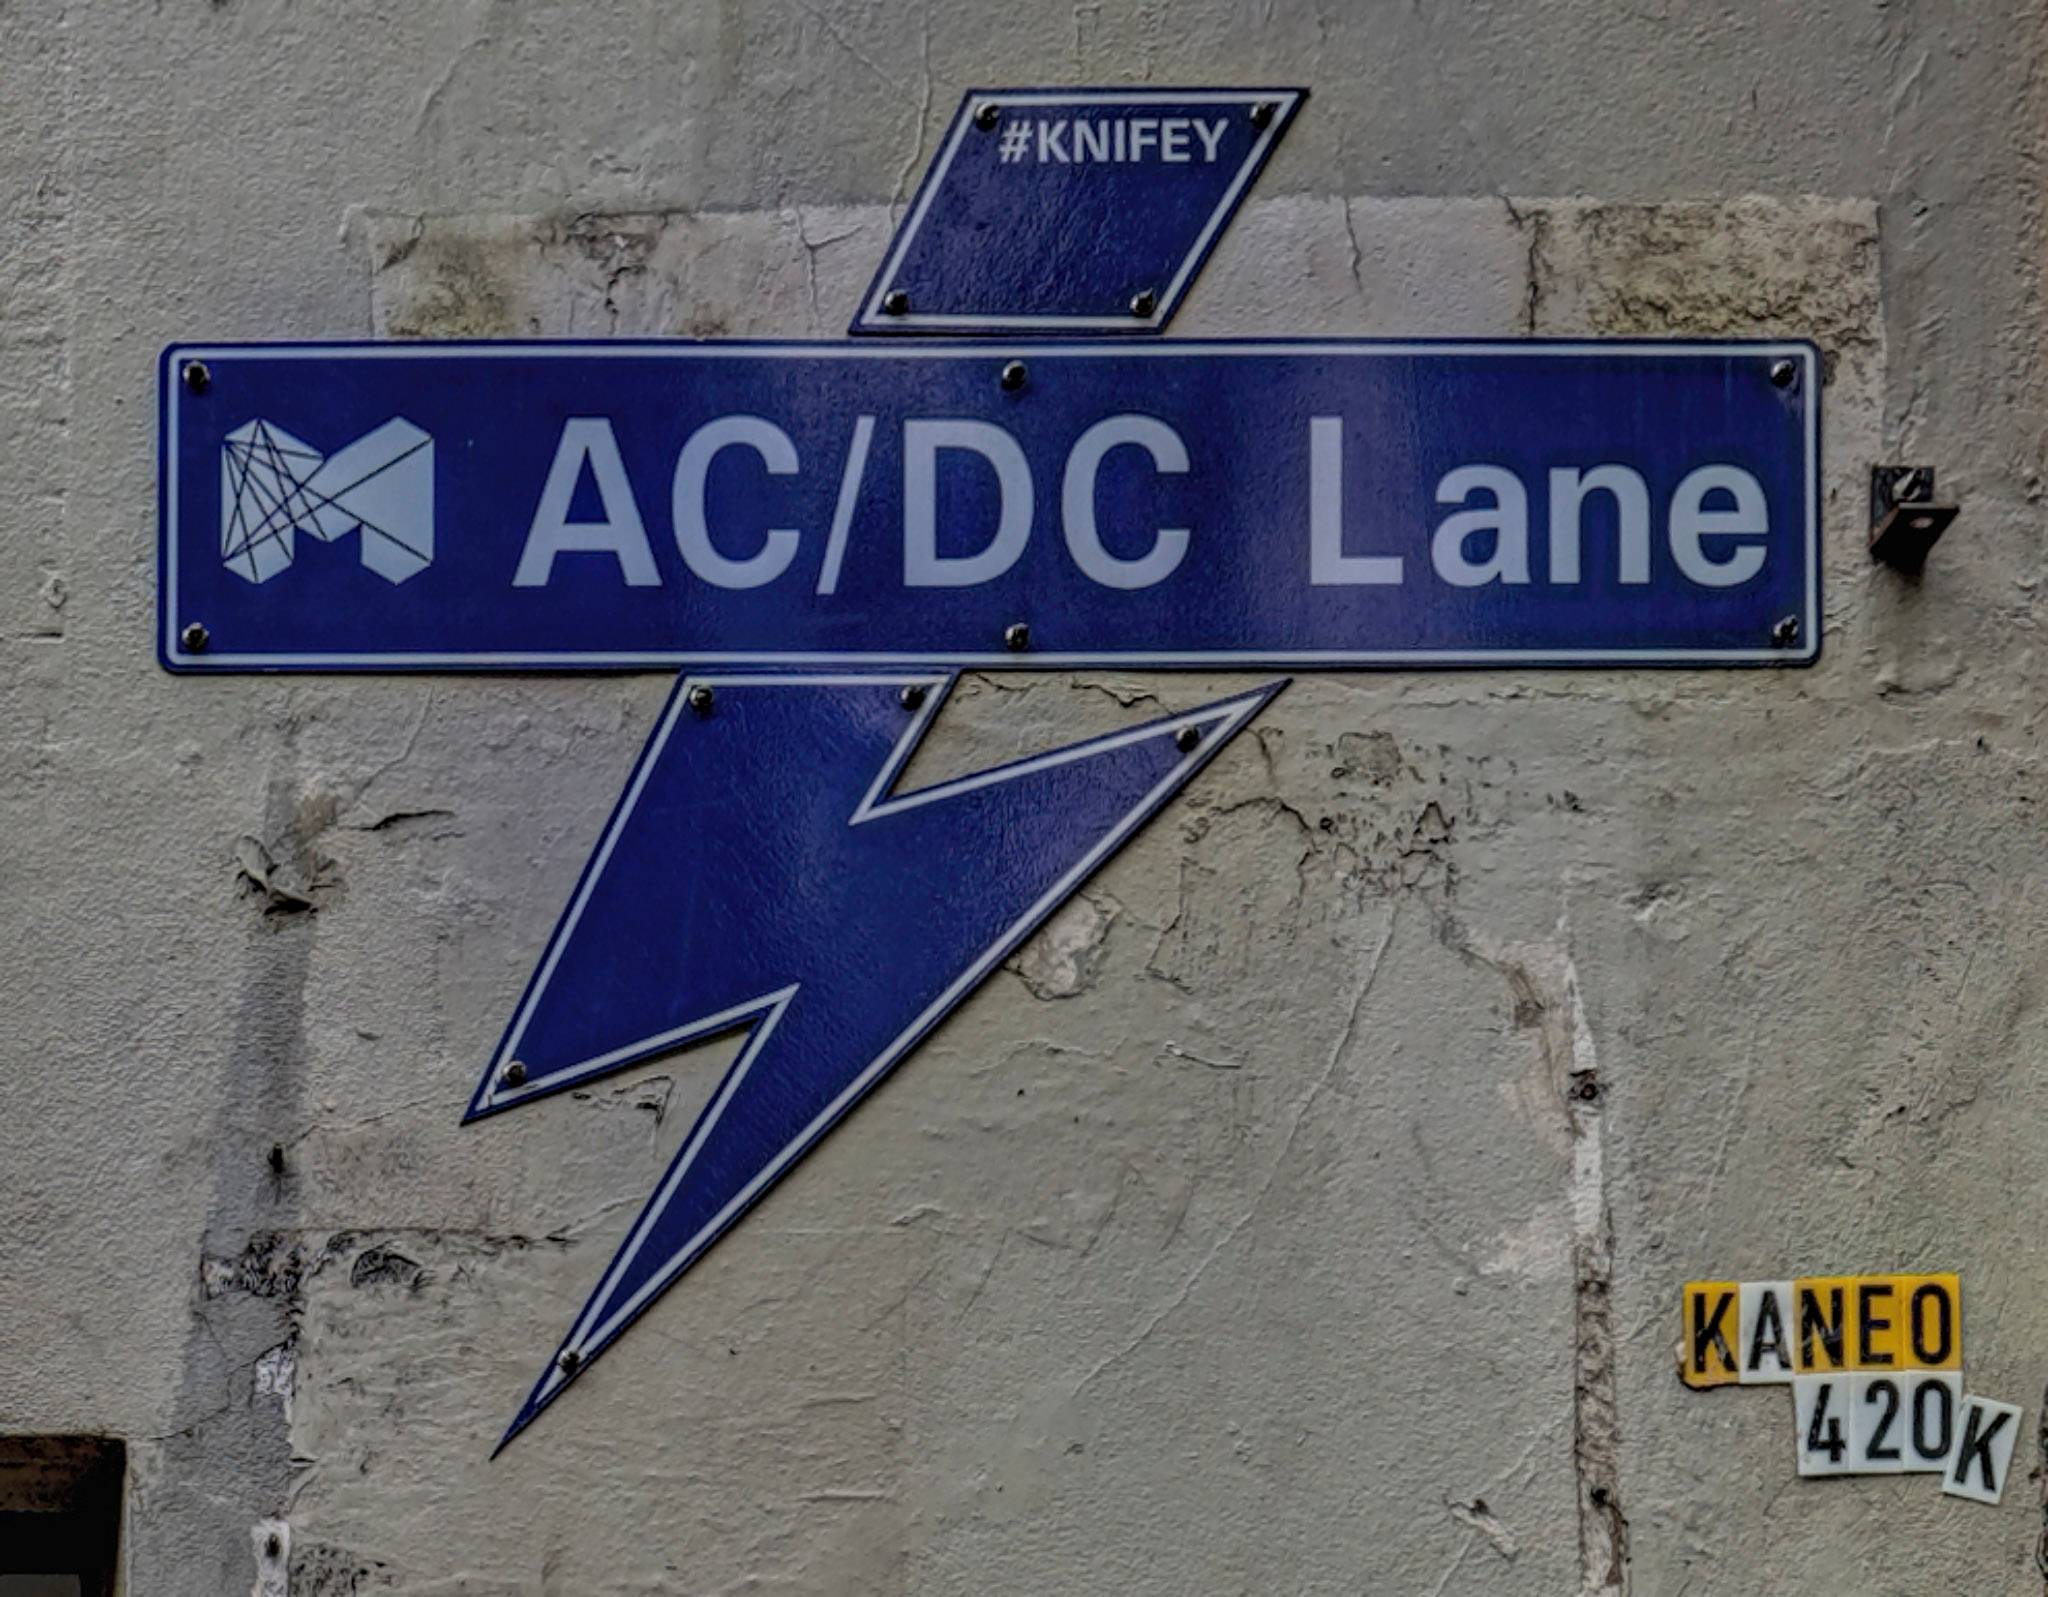 &mdash;AC/DC Lane